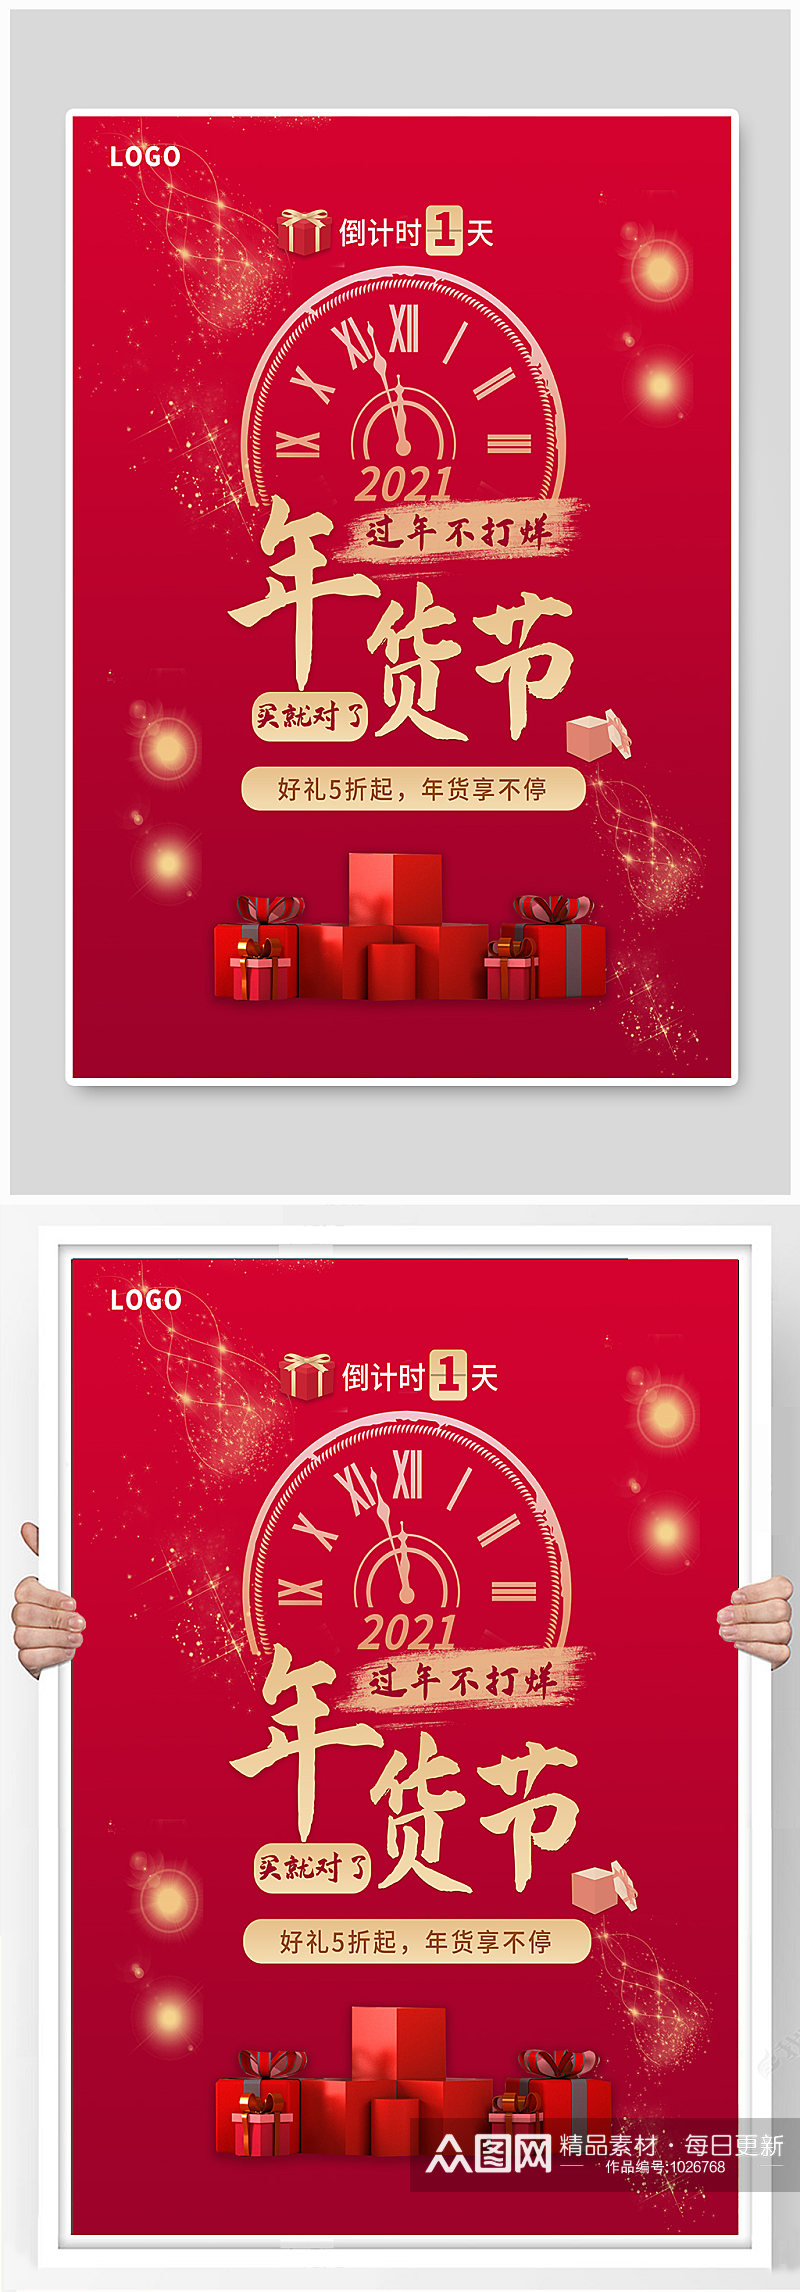 新年红色年货节促销海报素材